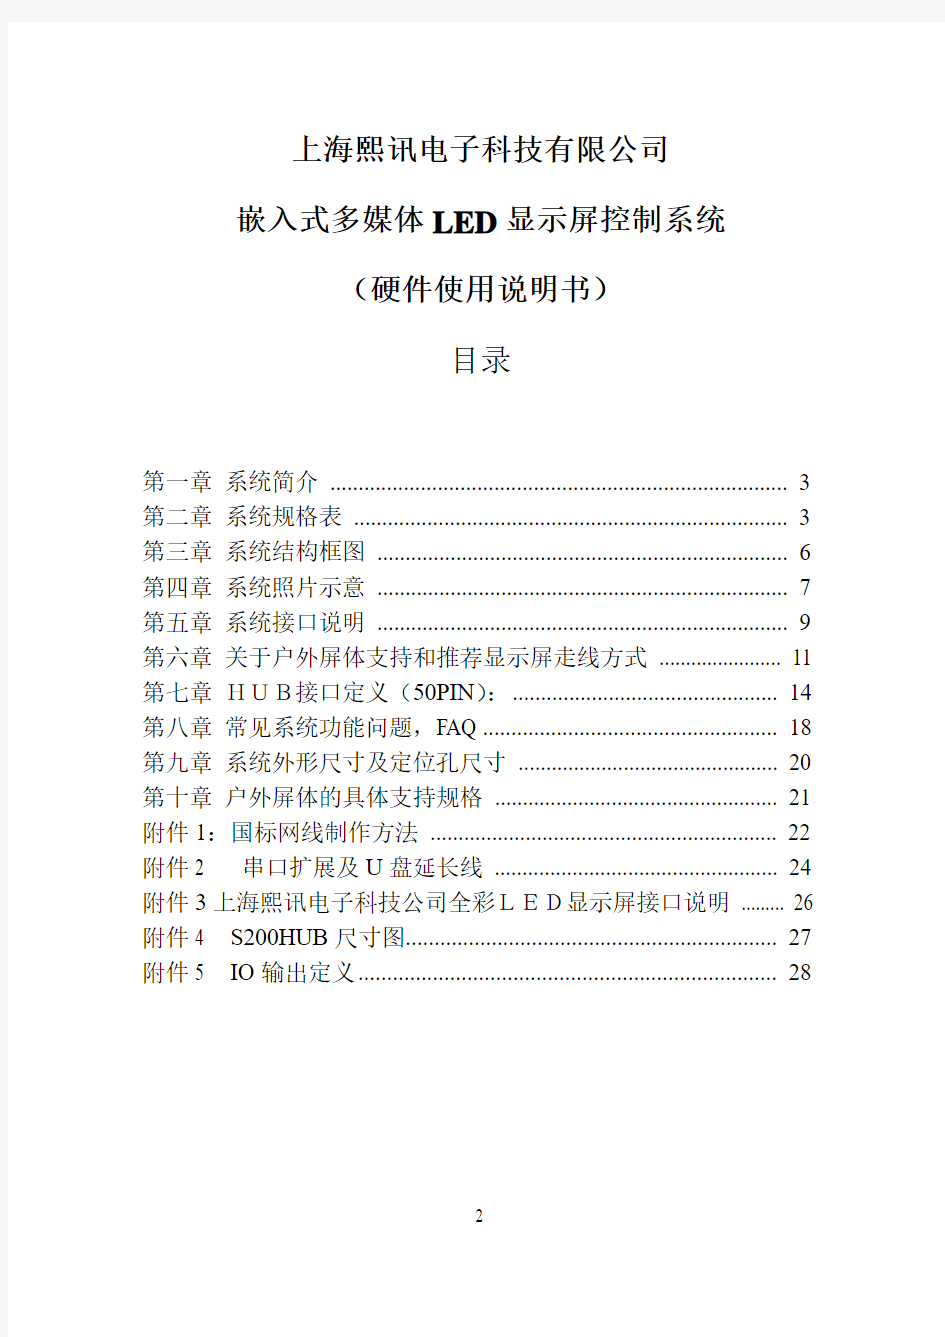 上海熙讯嵌入式LED显示屏控制系统说明书_080329